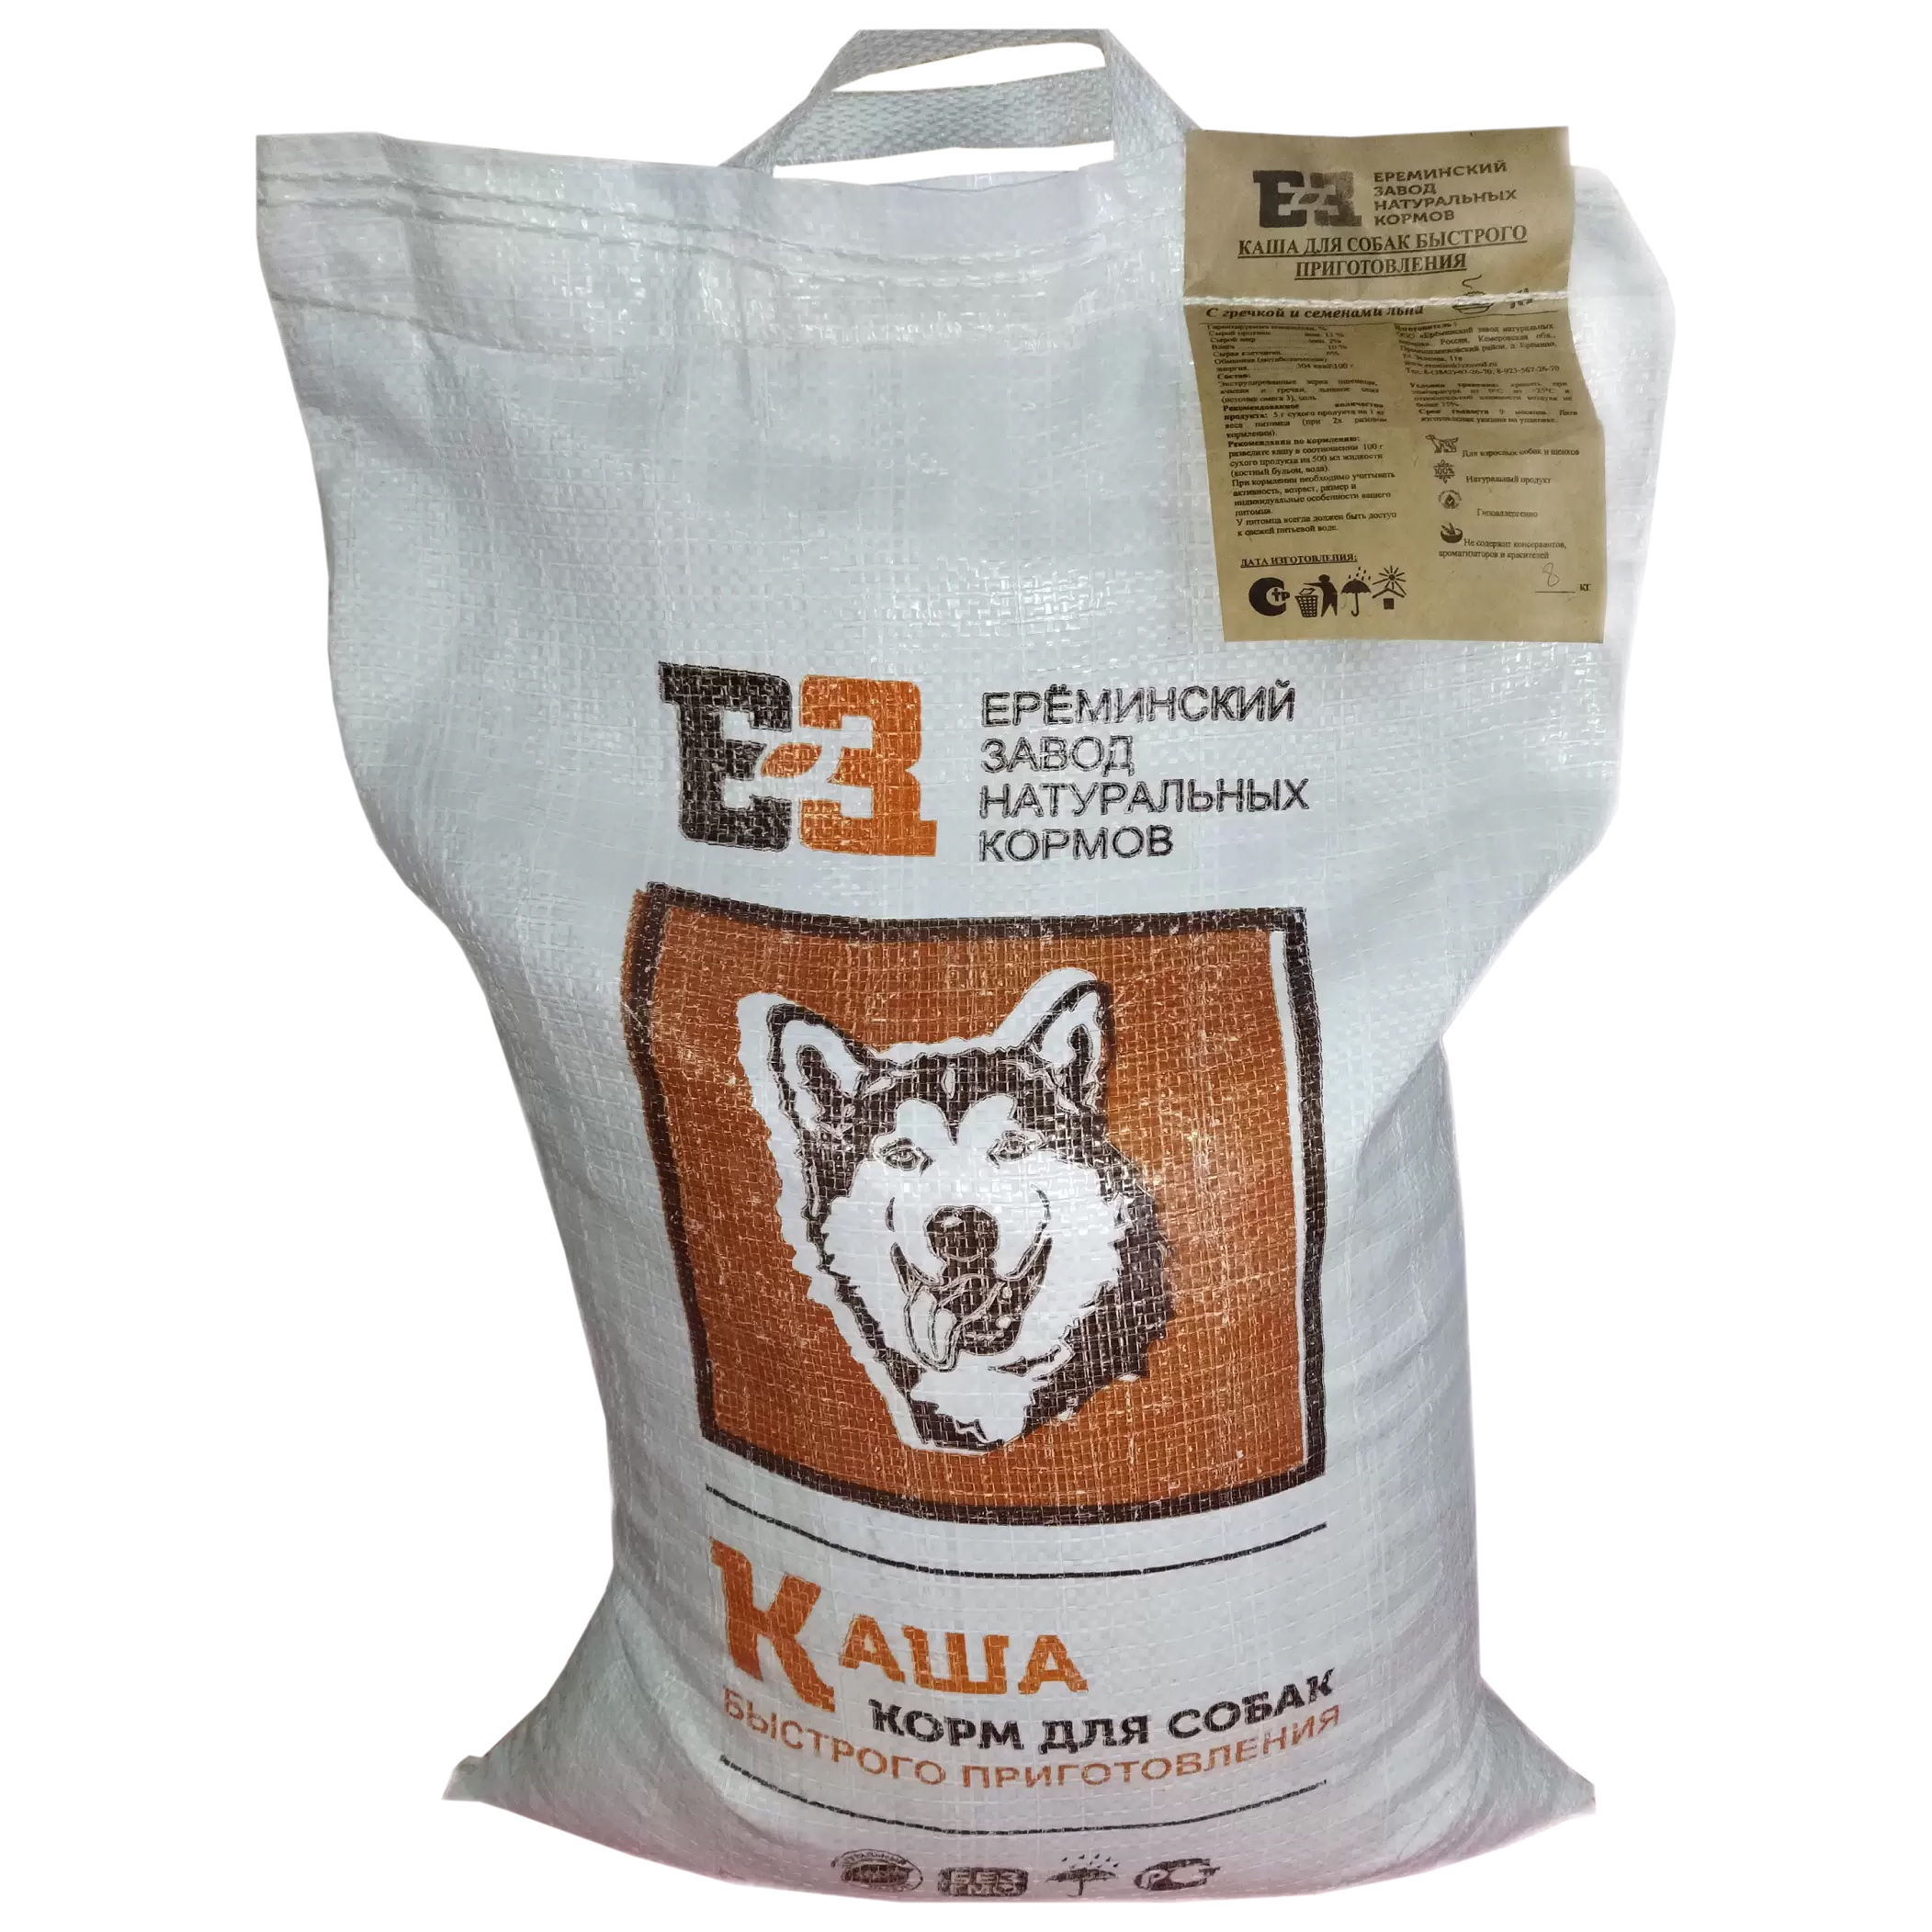 Каша для собак ЕЗНК быстрого приготовления с добавлением гречки и семян льна, 8 кг